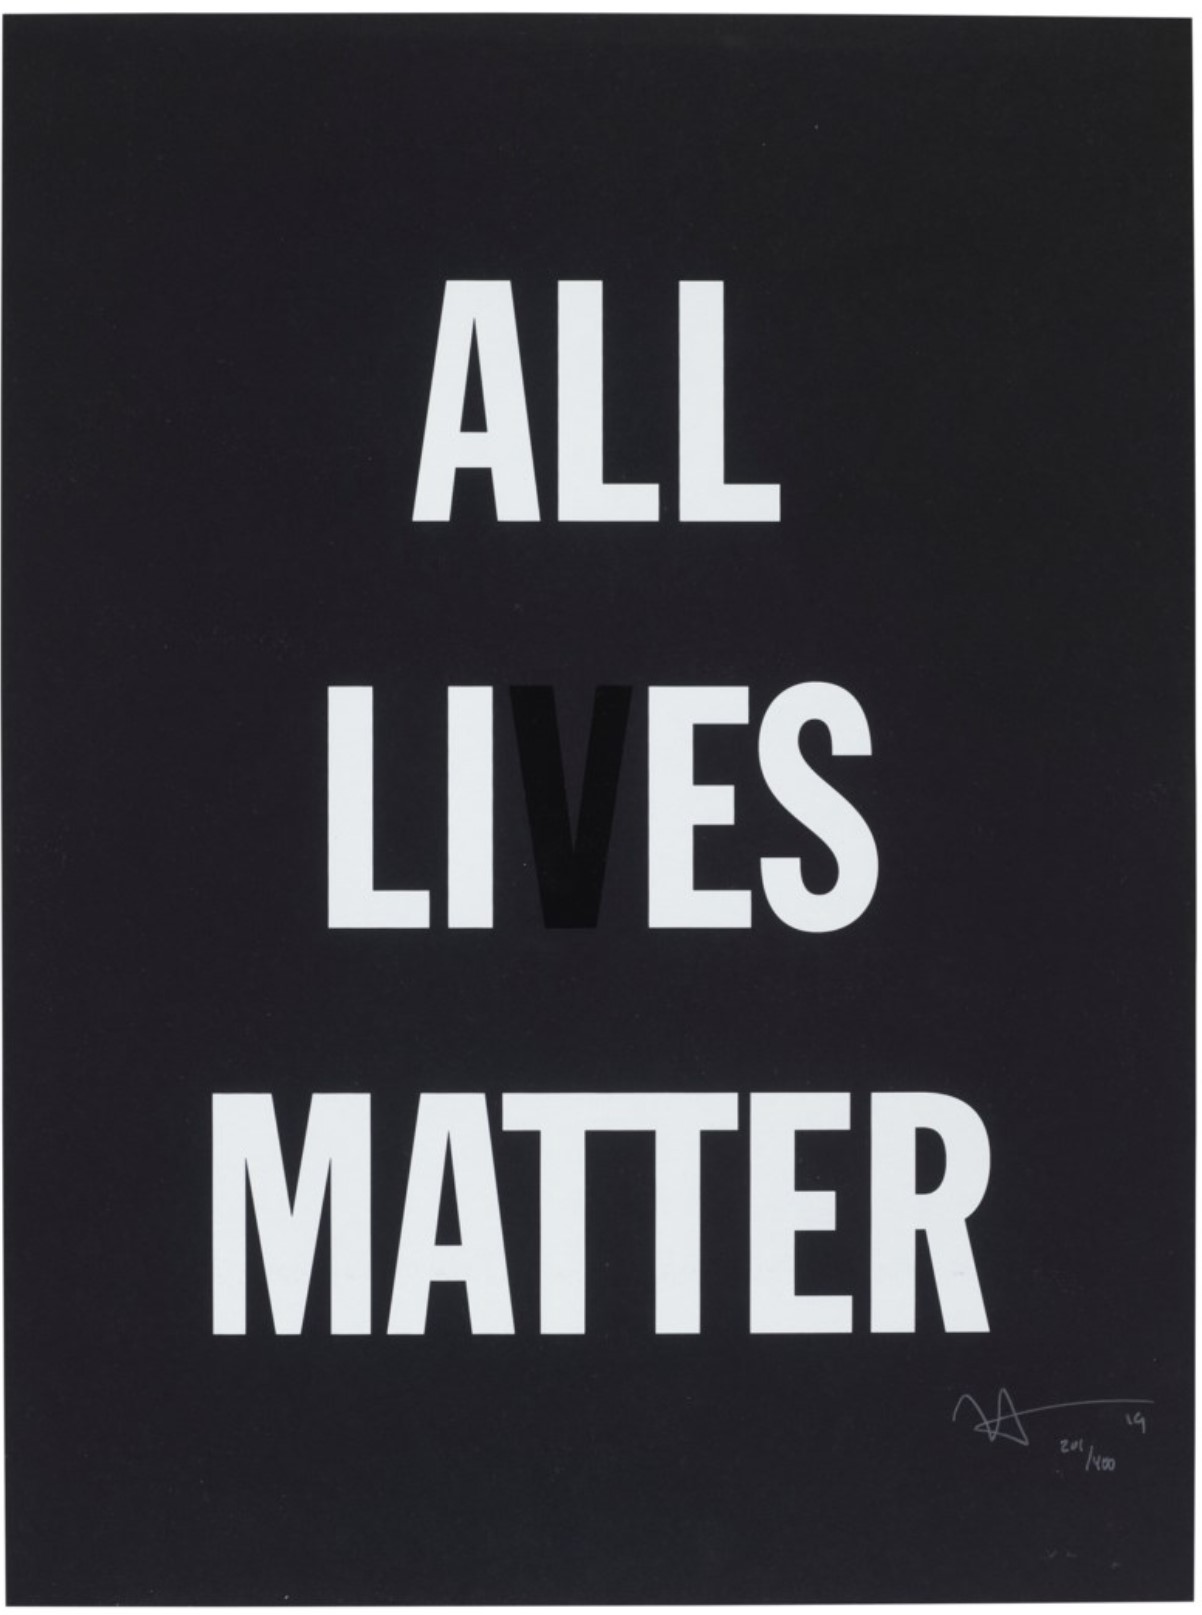 All Lies Matter